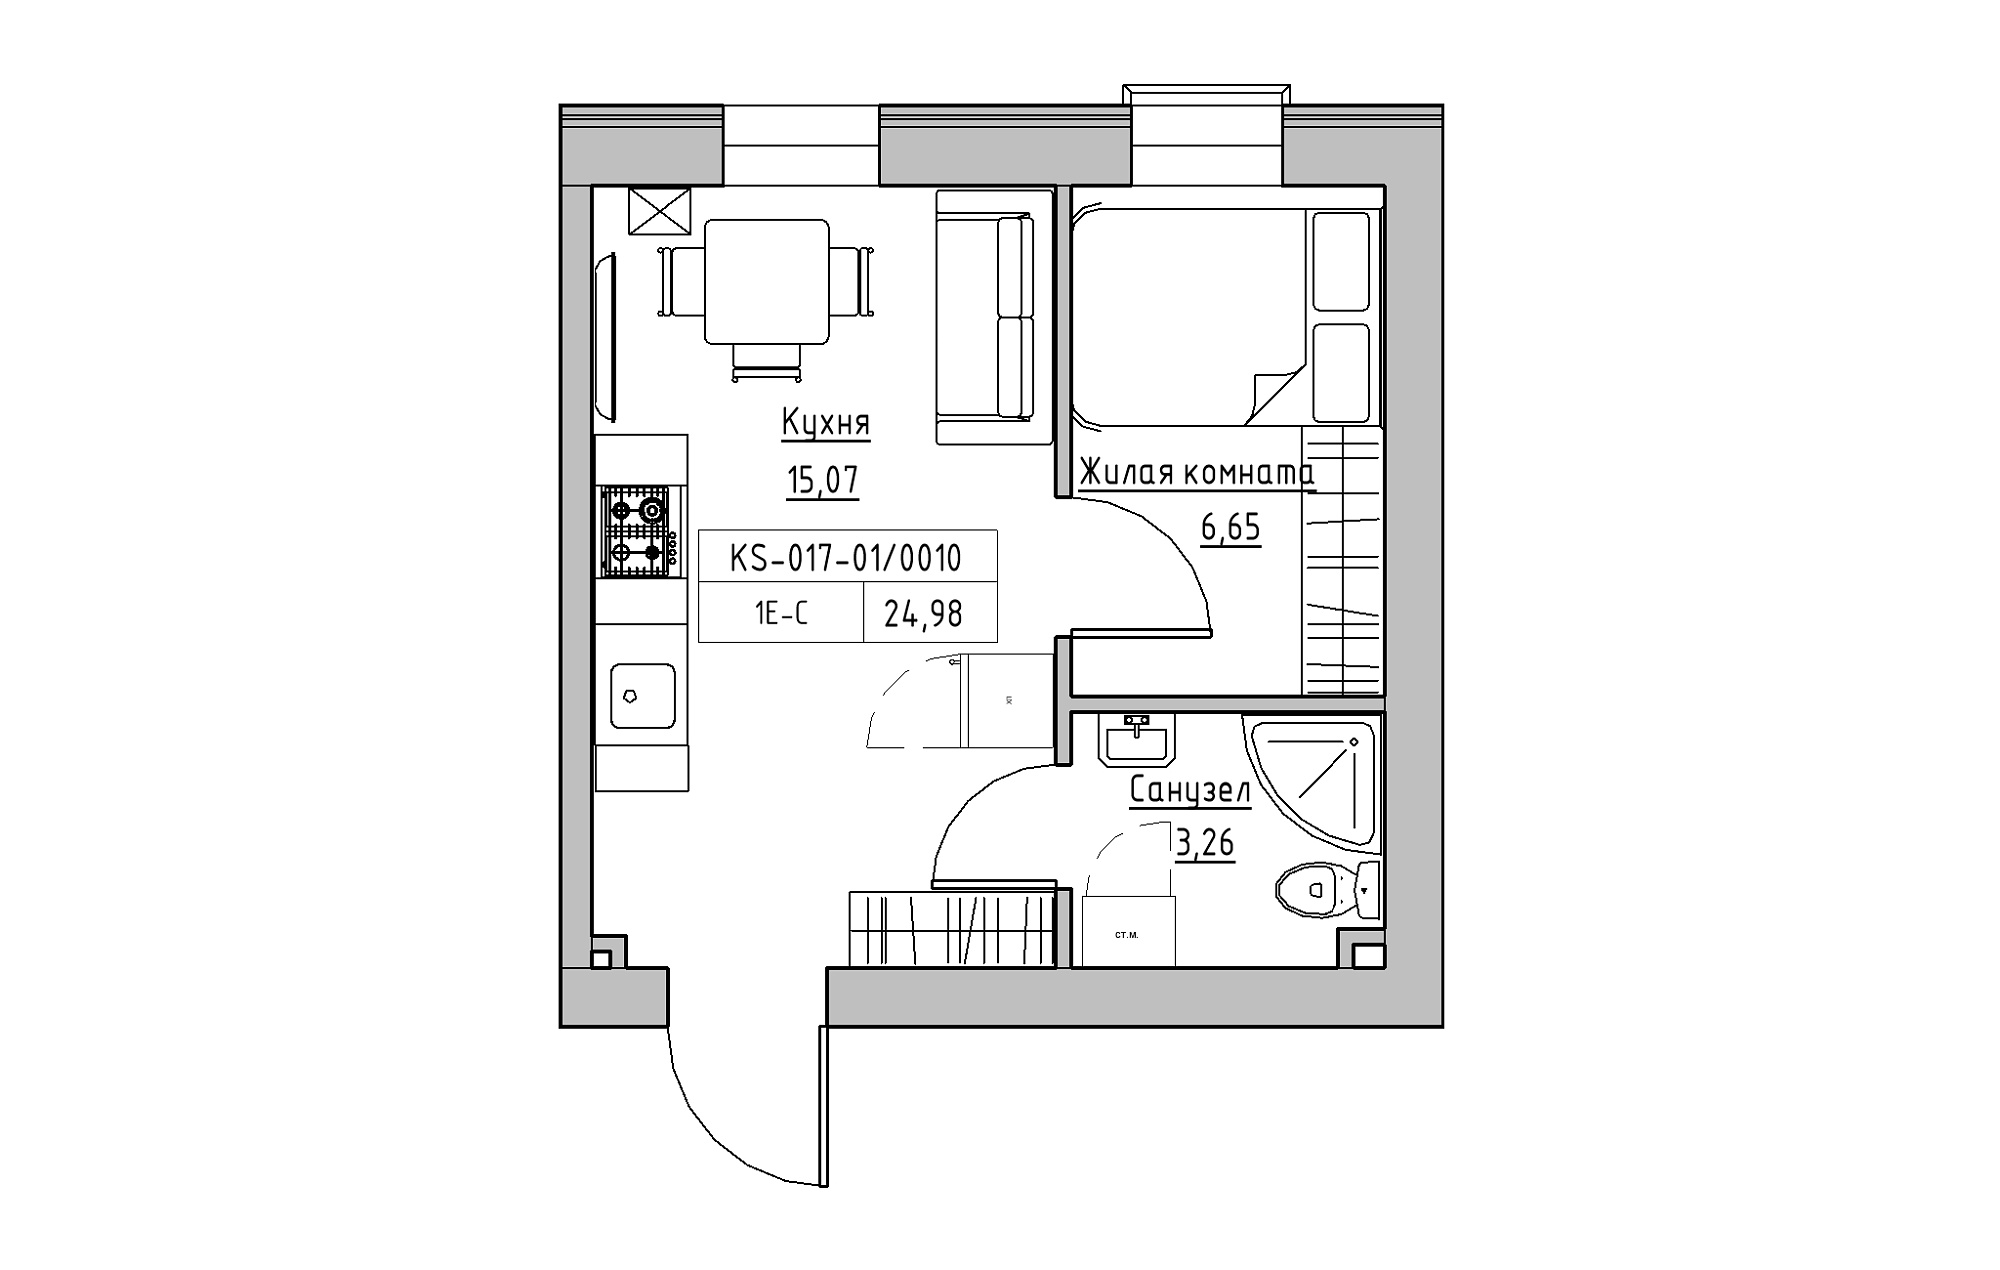 Планування 1-к квартира площею 24.98м2, KS-017-01/0010.